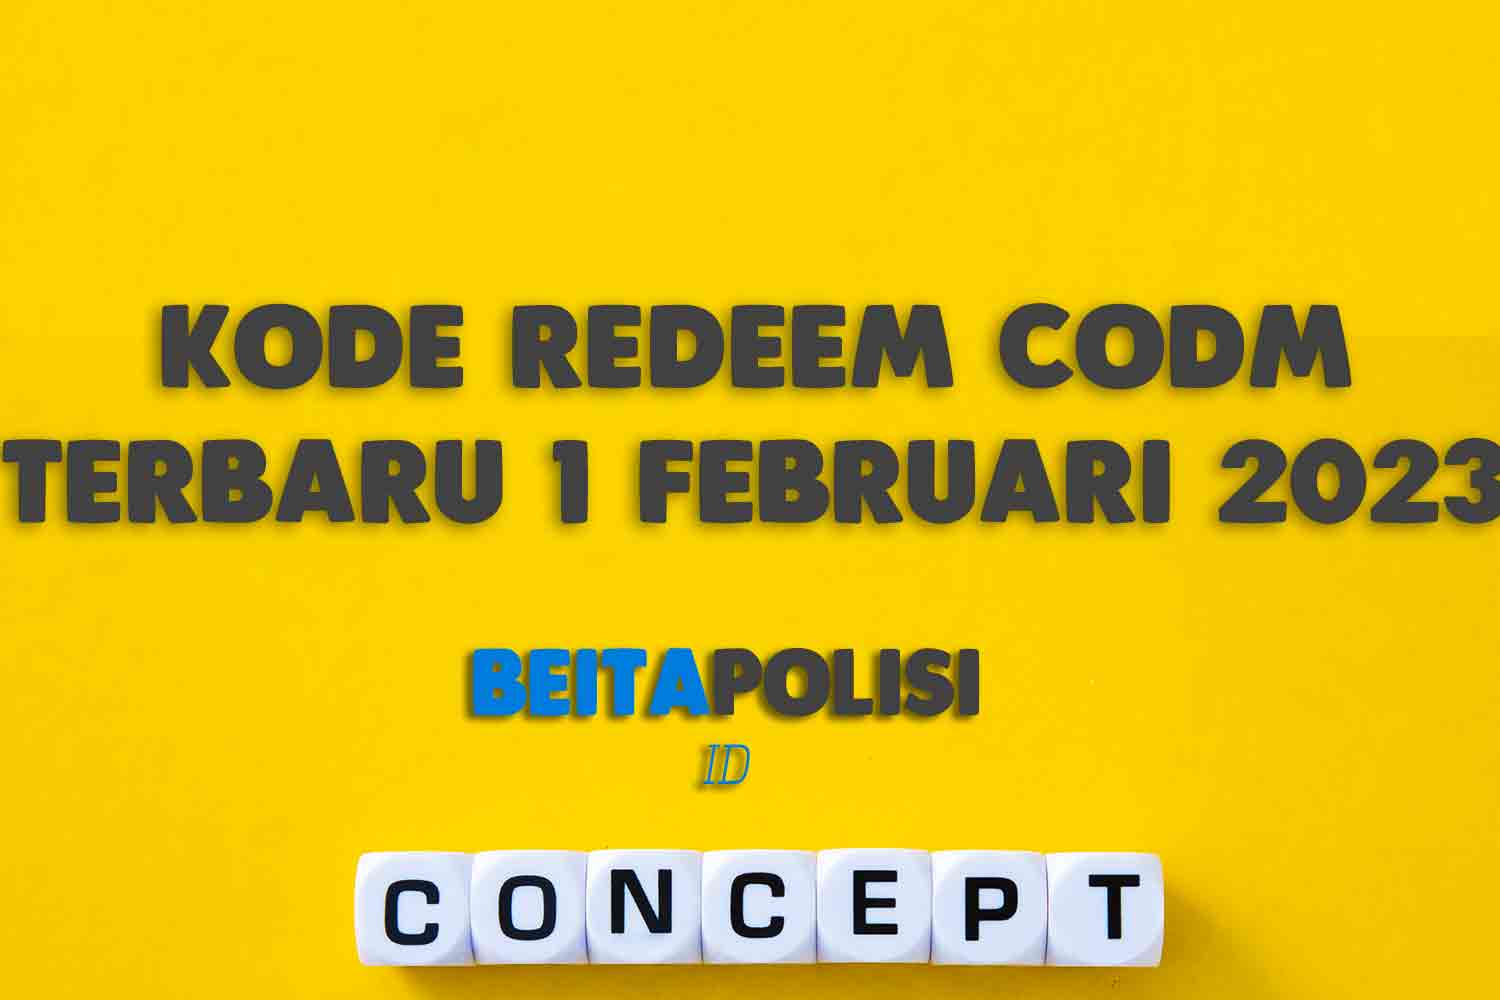 Kode Redeem Codm Terbaru 1 Februari 2023